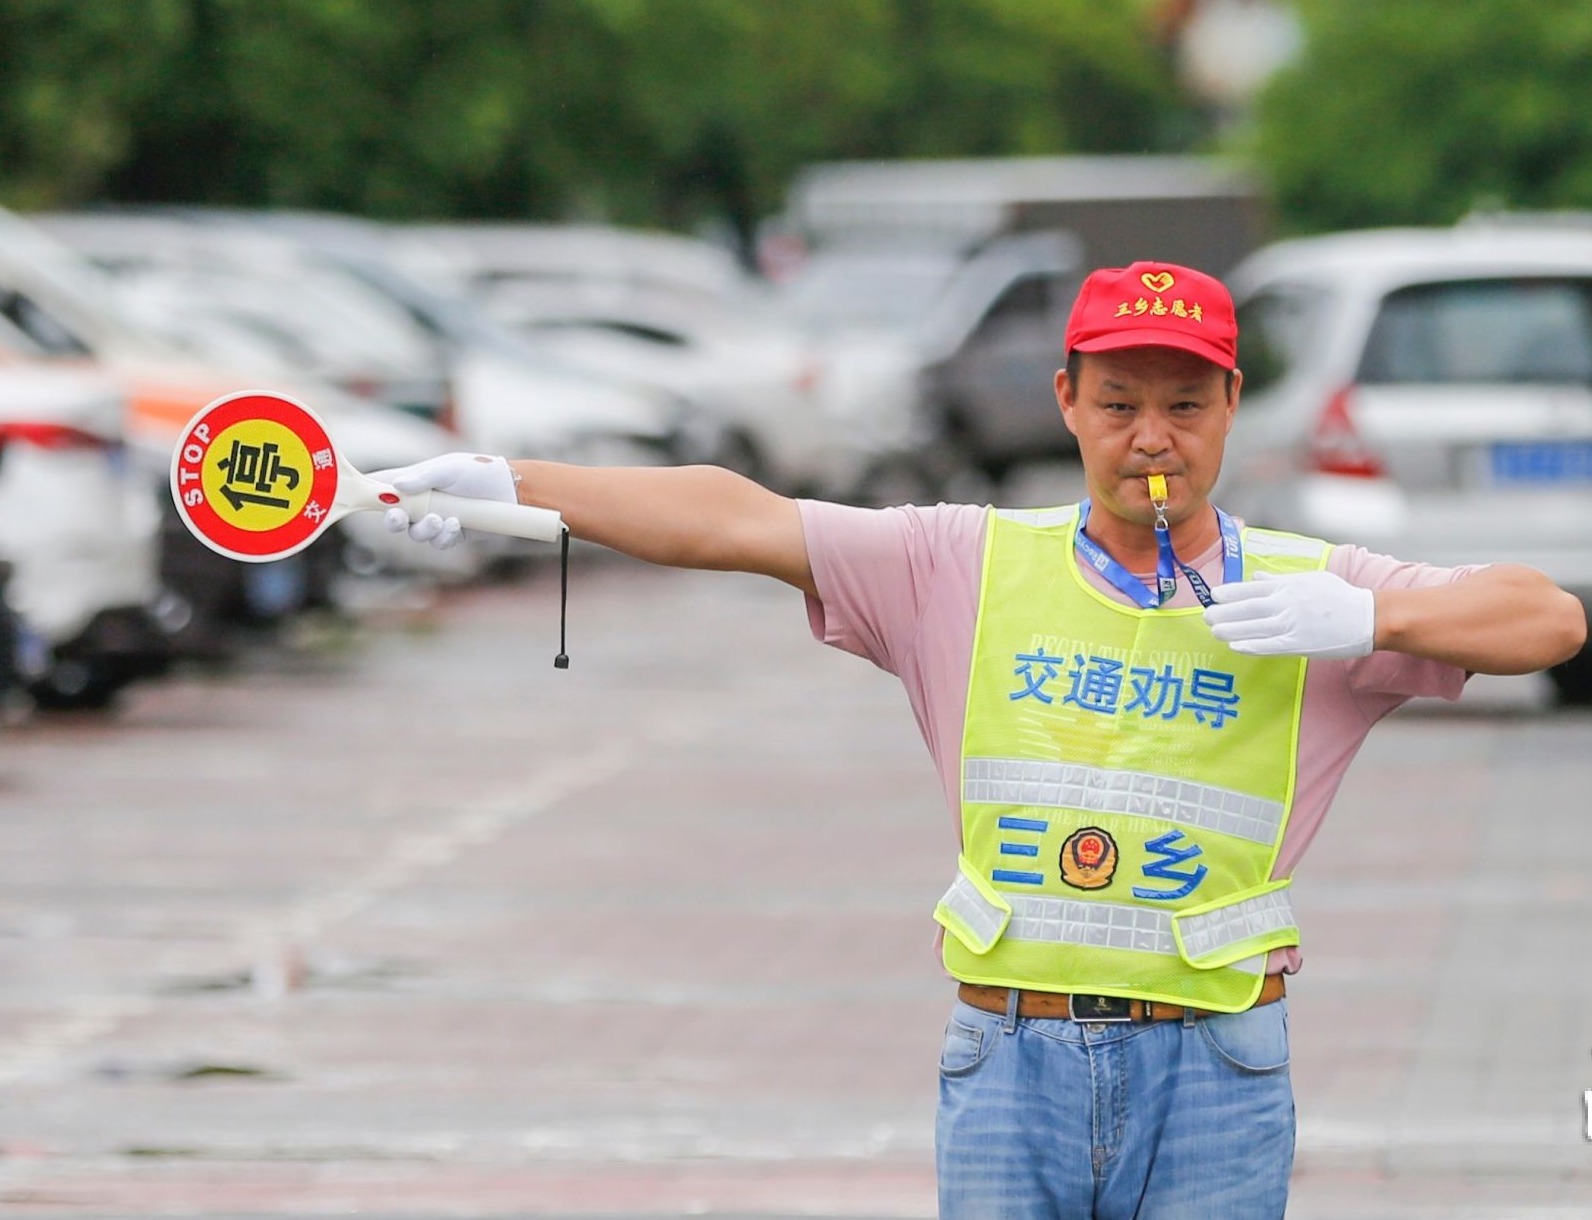 2013年，钟庄伟为交通劝导志愿者队伍首创“微笑式”交通引导手势，并向全市各镇区志愿者队伍推广。